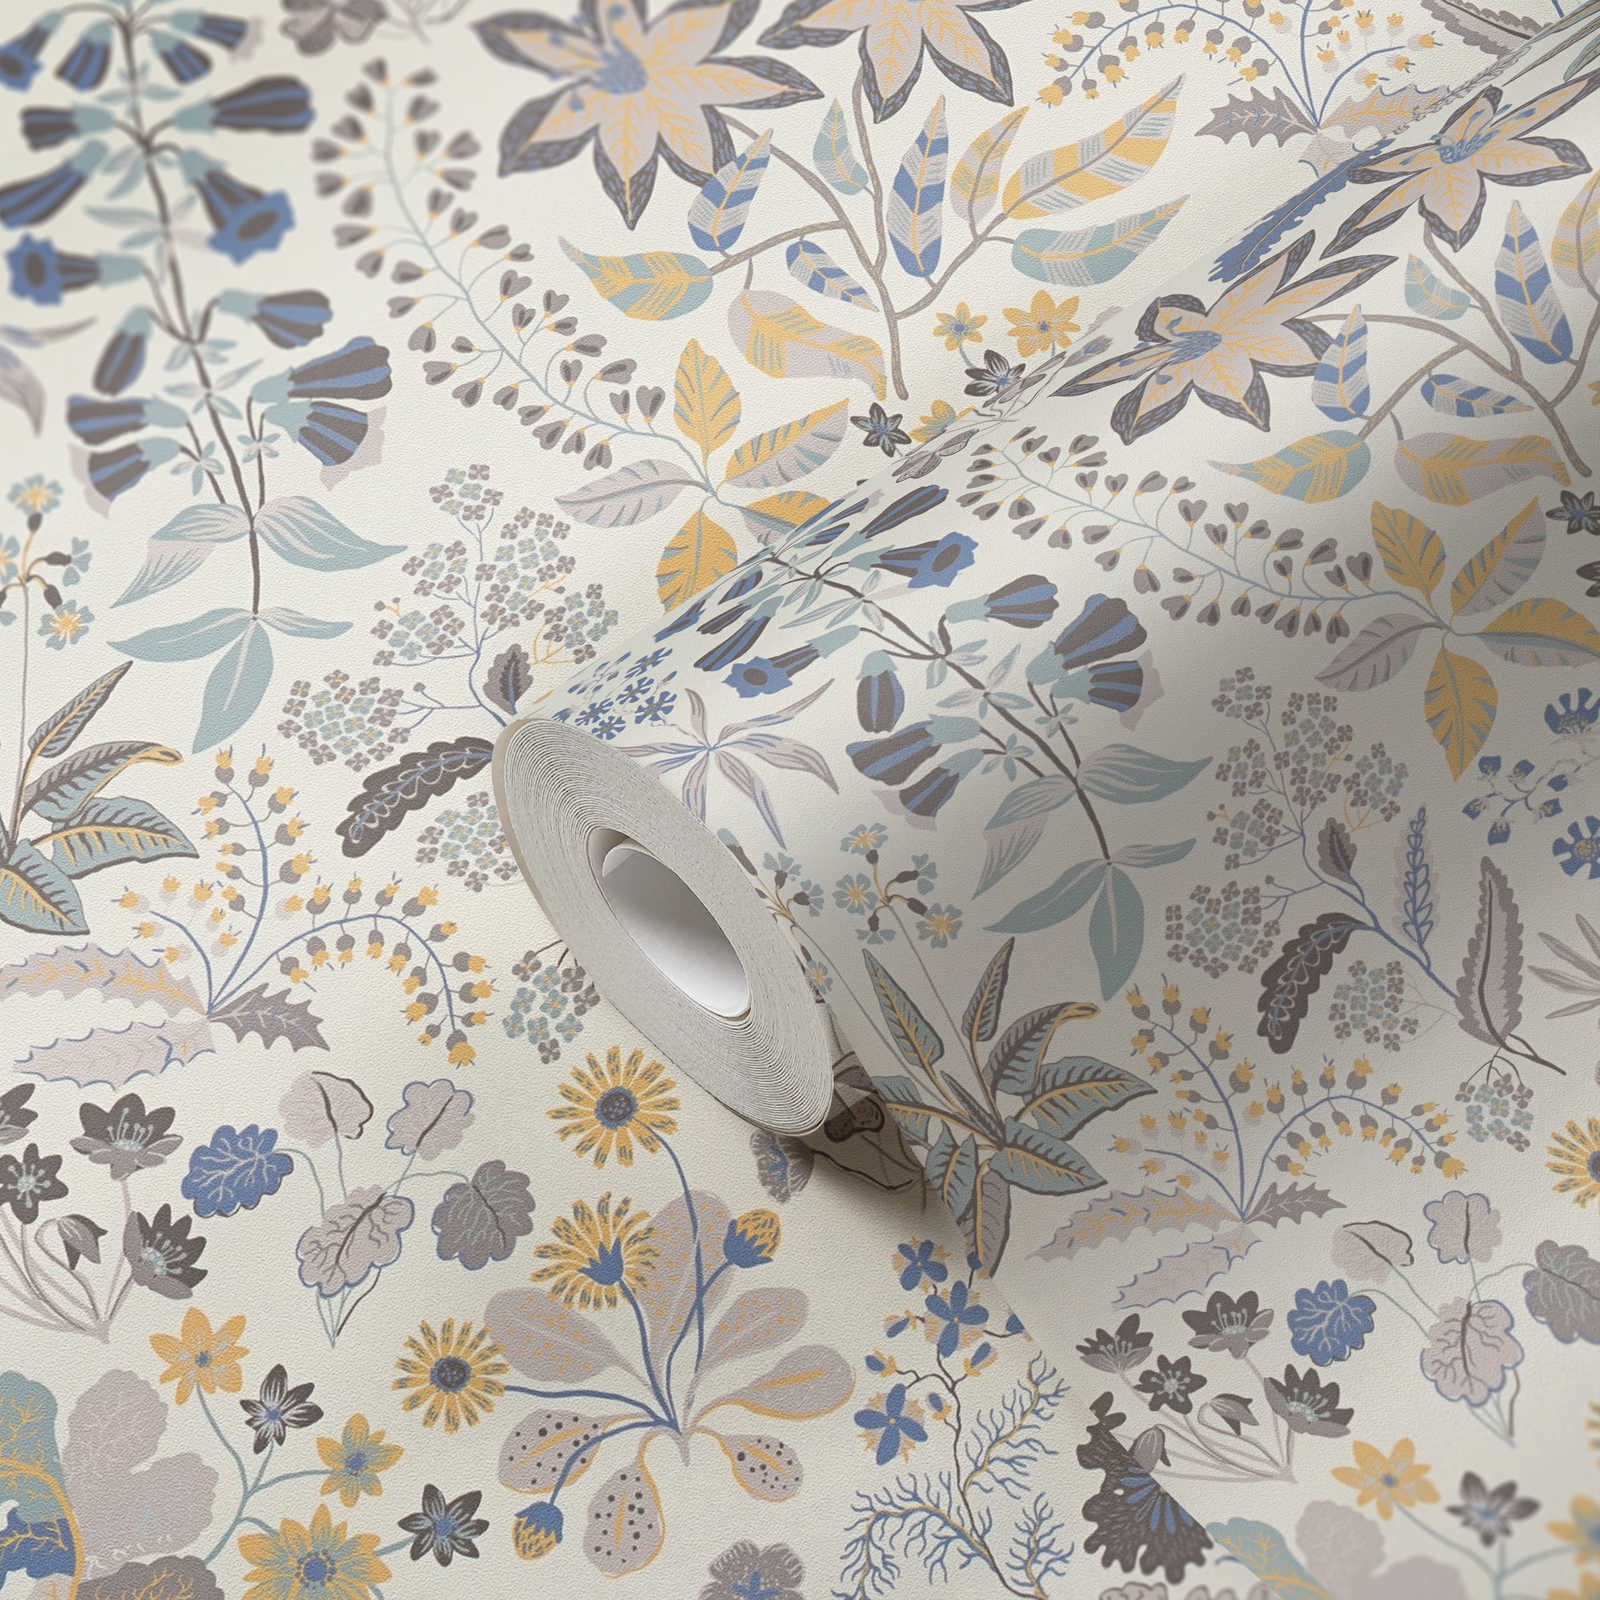             Papel pintado no tejido con un detallado motivo floral - gris, azul, crema
        